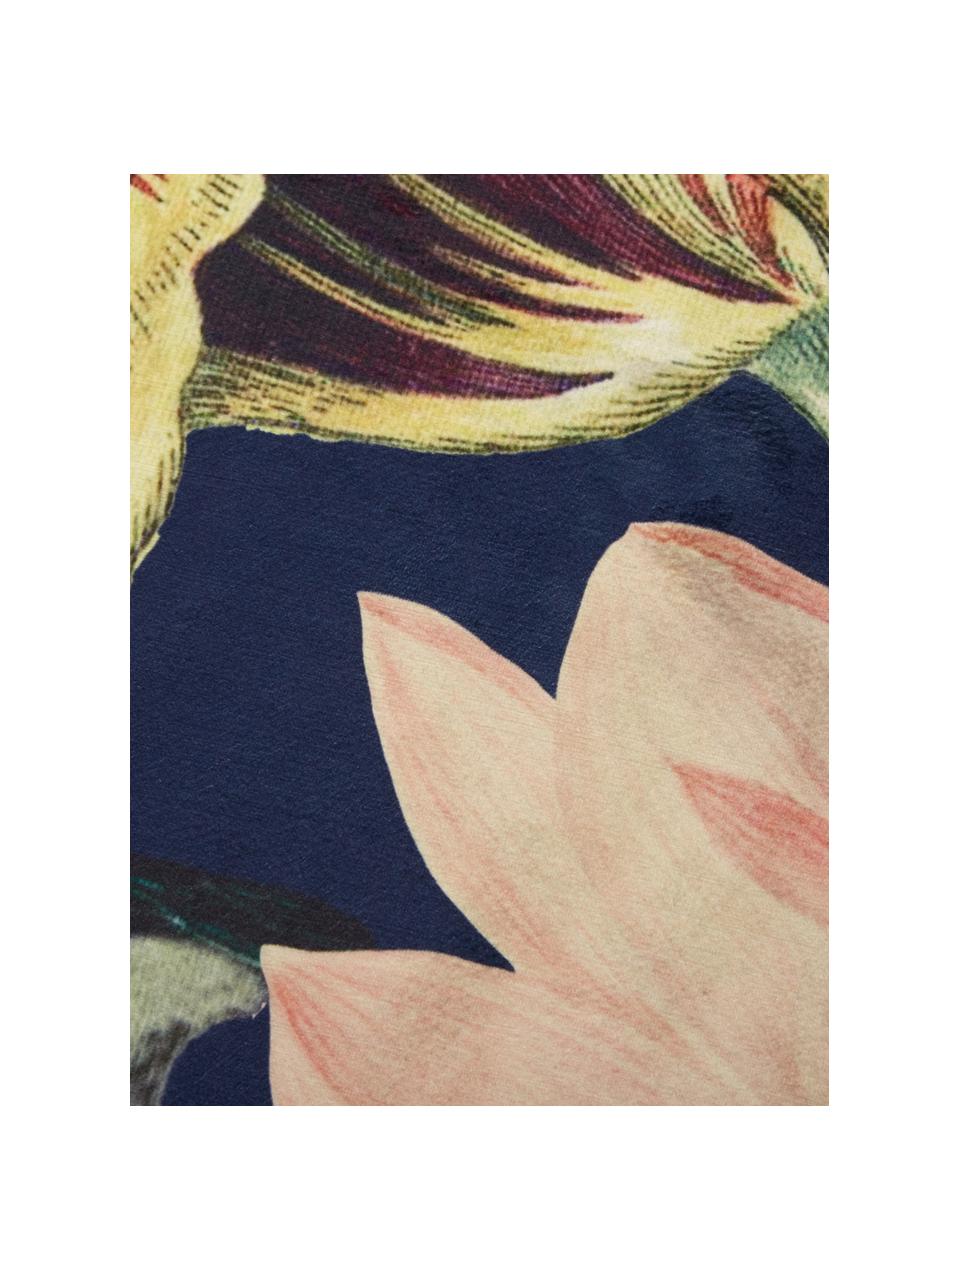 Runder Teppich Filou mit Blumenmuster, 60% Polyester, 30% thermoplastisches Polyurethan, 10% Baumwolle, Dunkelblau, Mehrfarbig, Ø 180 cm (Größe L)